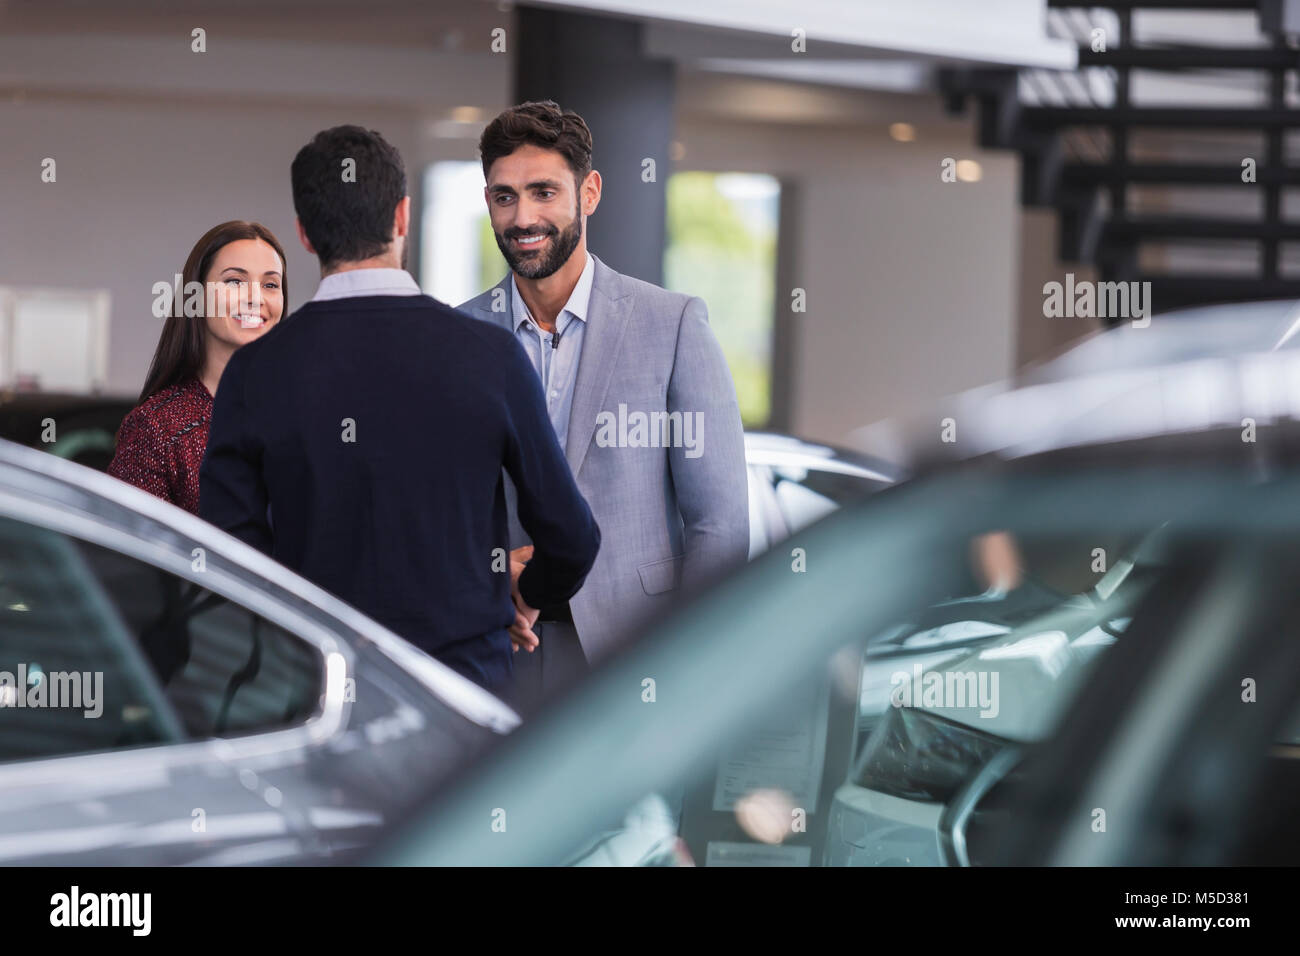 Accueil vendeur de voiture, serrant la main avec deux clients en car dealership showroom Banque D'Images